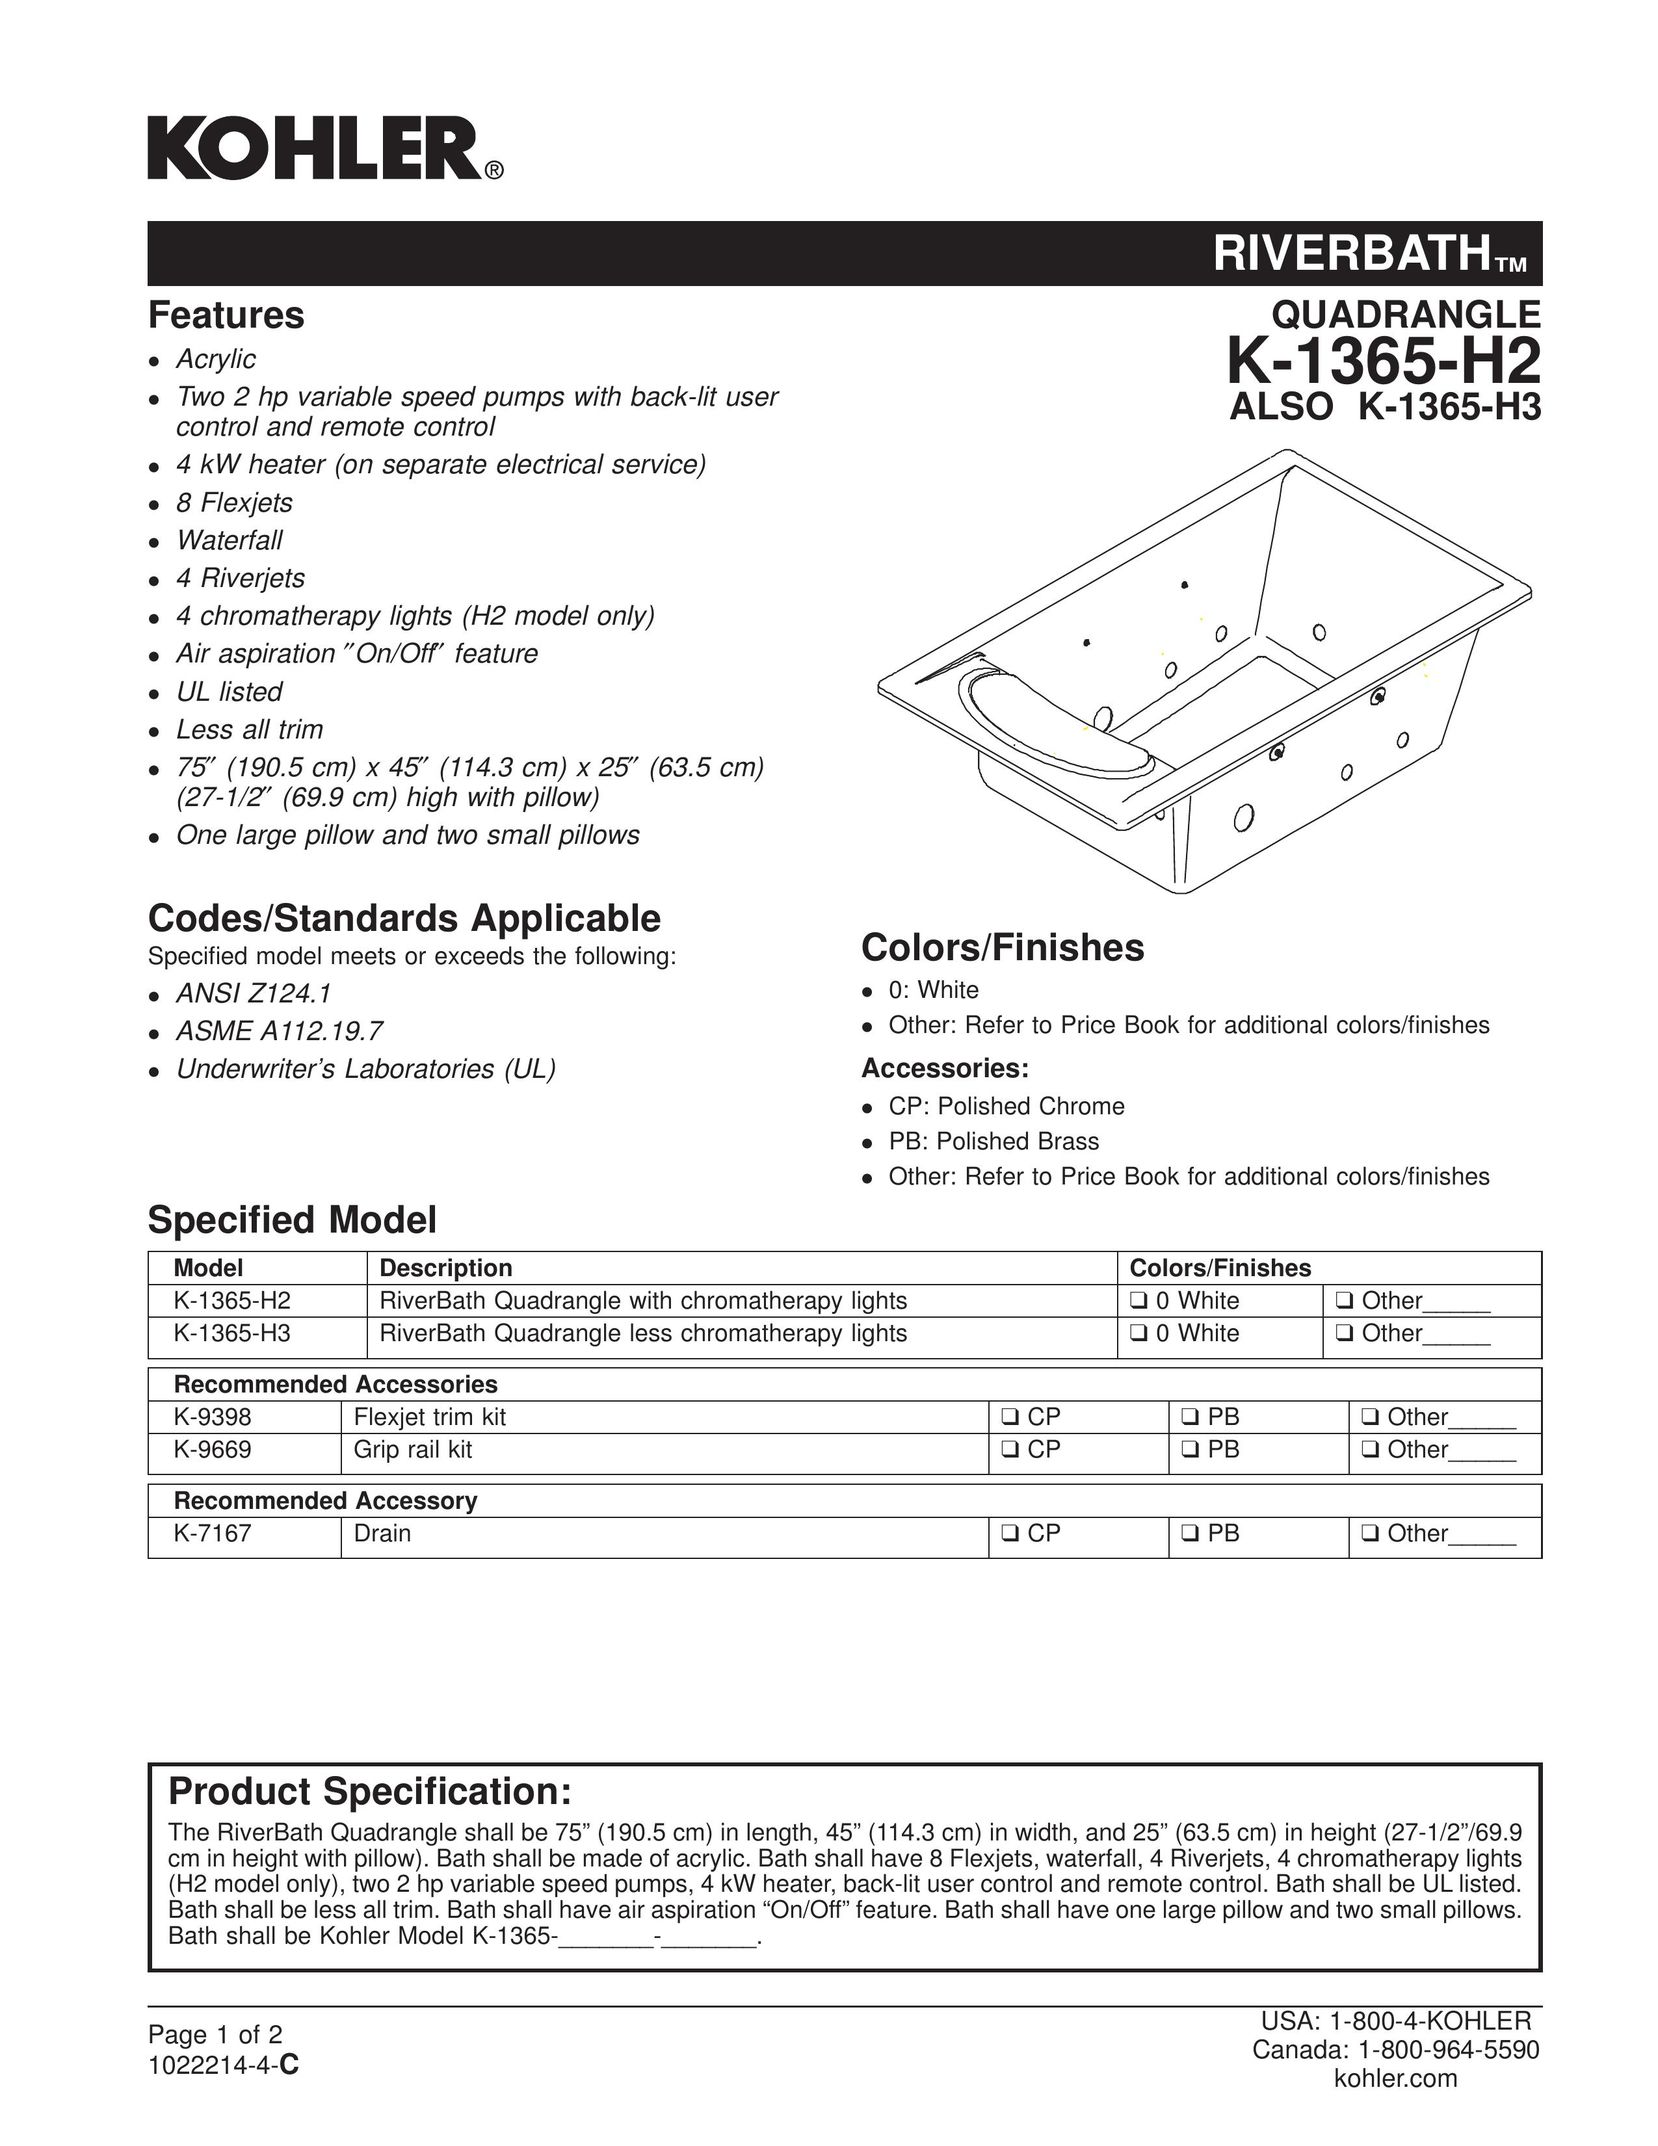 Kohler K-1365-H2 Plumbing Product User Manual